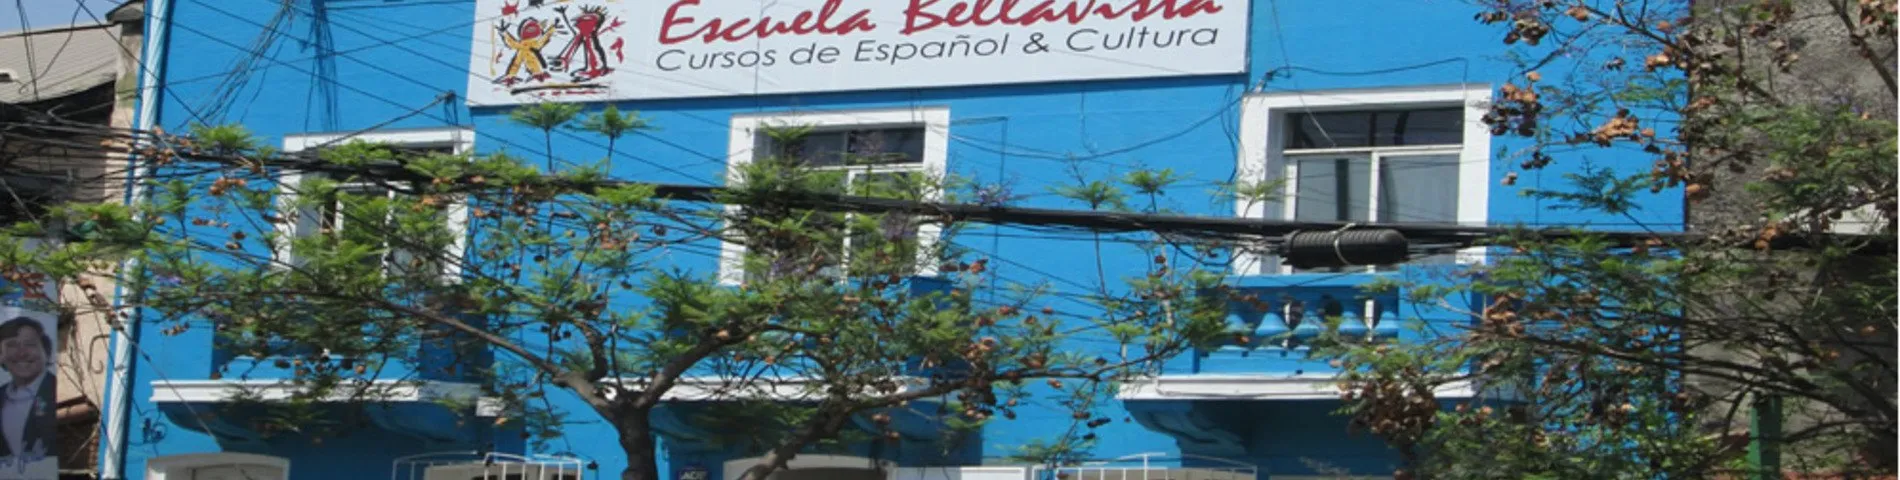 Escuela Bellavista зображення 1